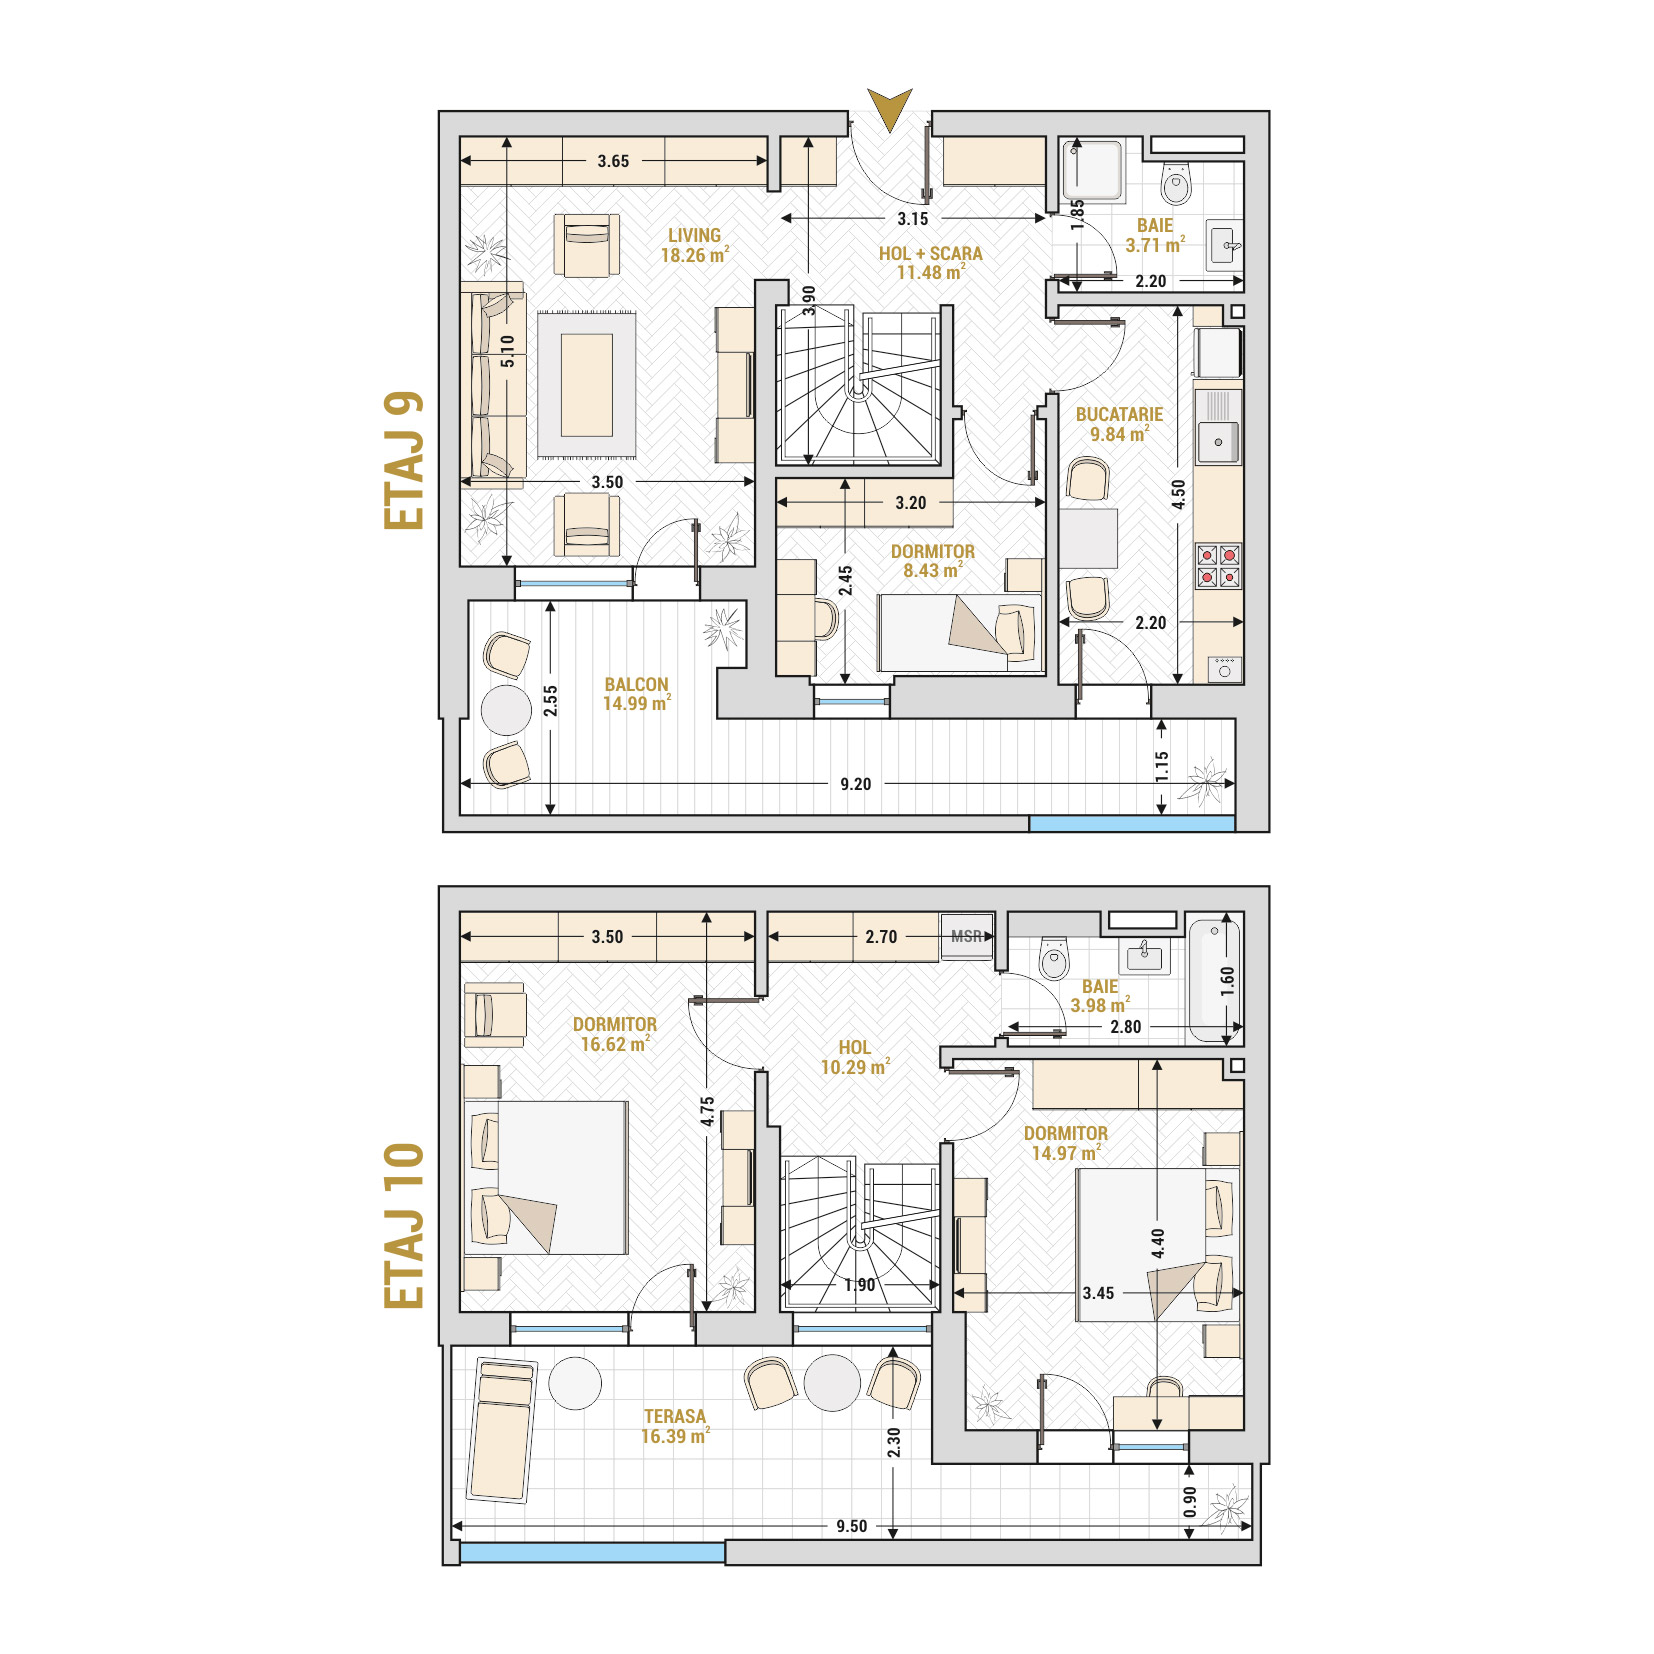 Penthouse 4 Camere Tip 3 Corp 1 - Drumul Taberei Residence - Apartamente de vanzare Bucuresti - Suprafata utila totala - 128.96 mp